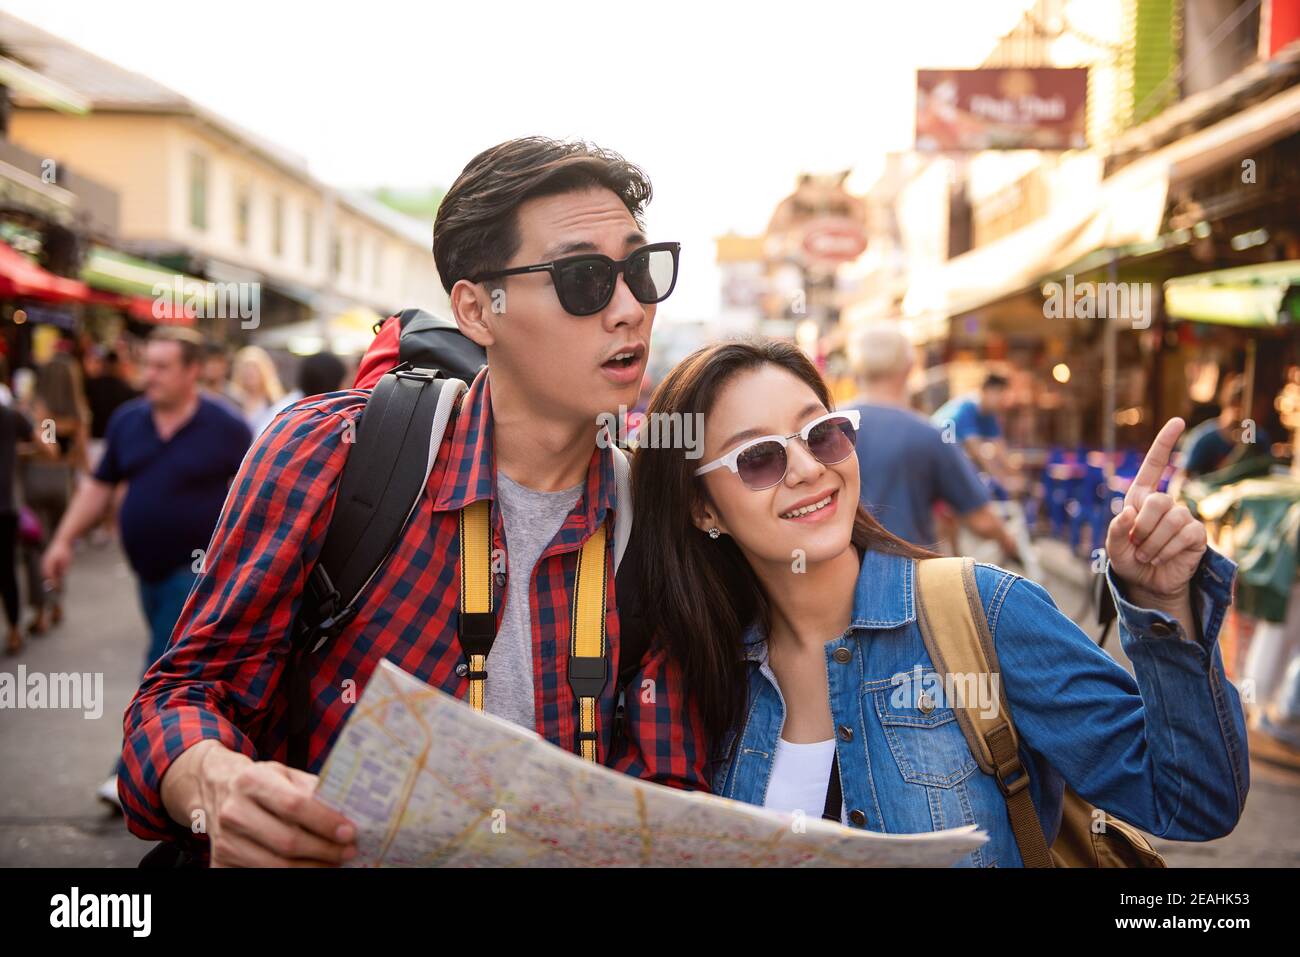 Jovem Casal De Turistas Asiáticos a Fazer Uma Selfie Em Bangkok Tailândia  Imagem de Stock - Imagem de postura, esperto: 184326243